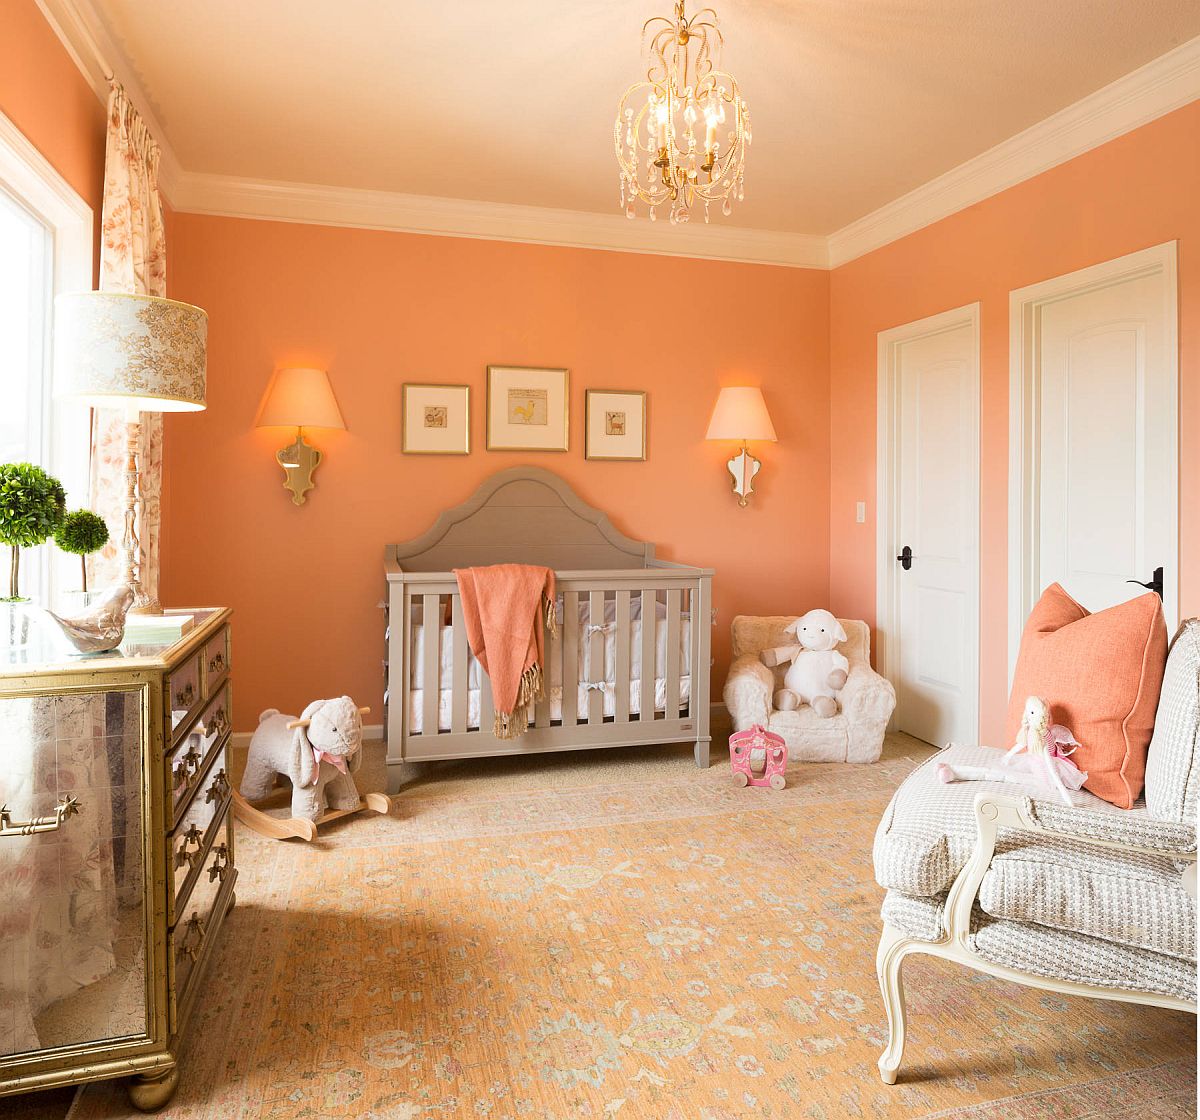 Phòng cho trẻ sơ sinh được trang trí theo chủ đề mùa thu với sắc cam anh đào nhẹ nhàng, tinh tế kết hợp ăn ý cùng ánh sáng tự nhiên.